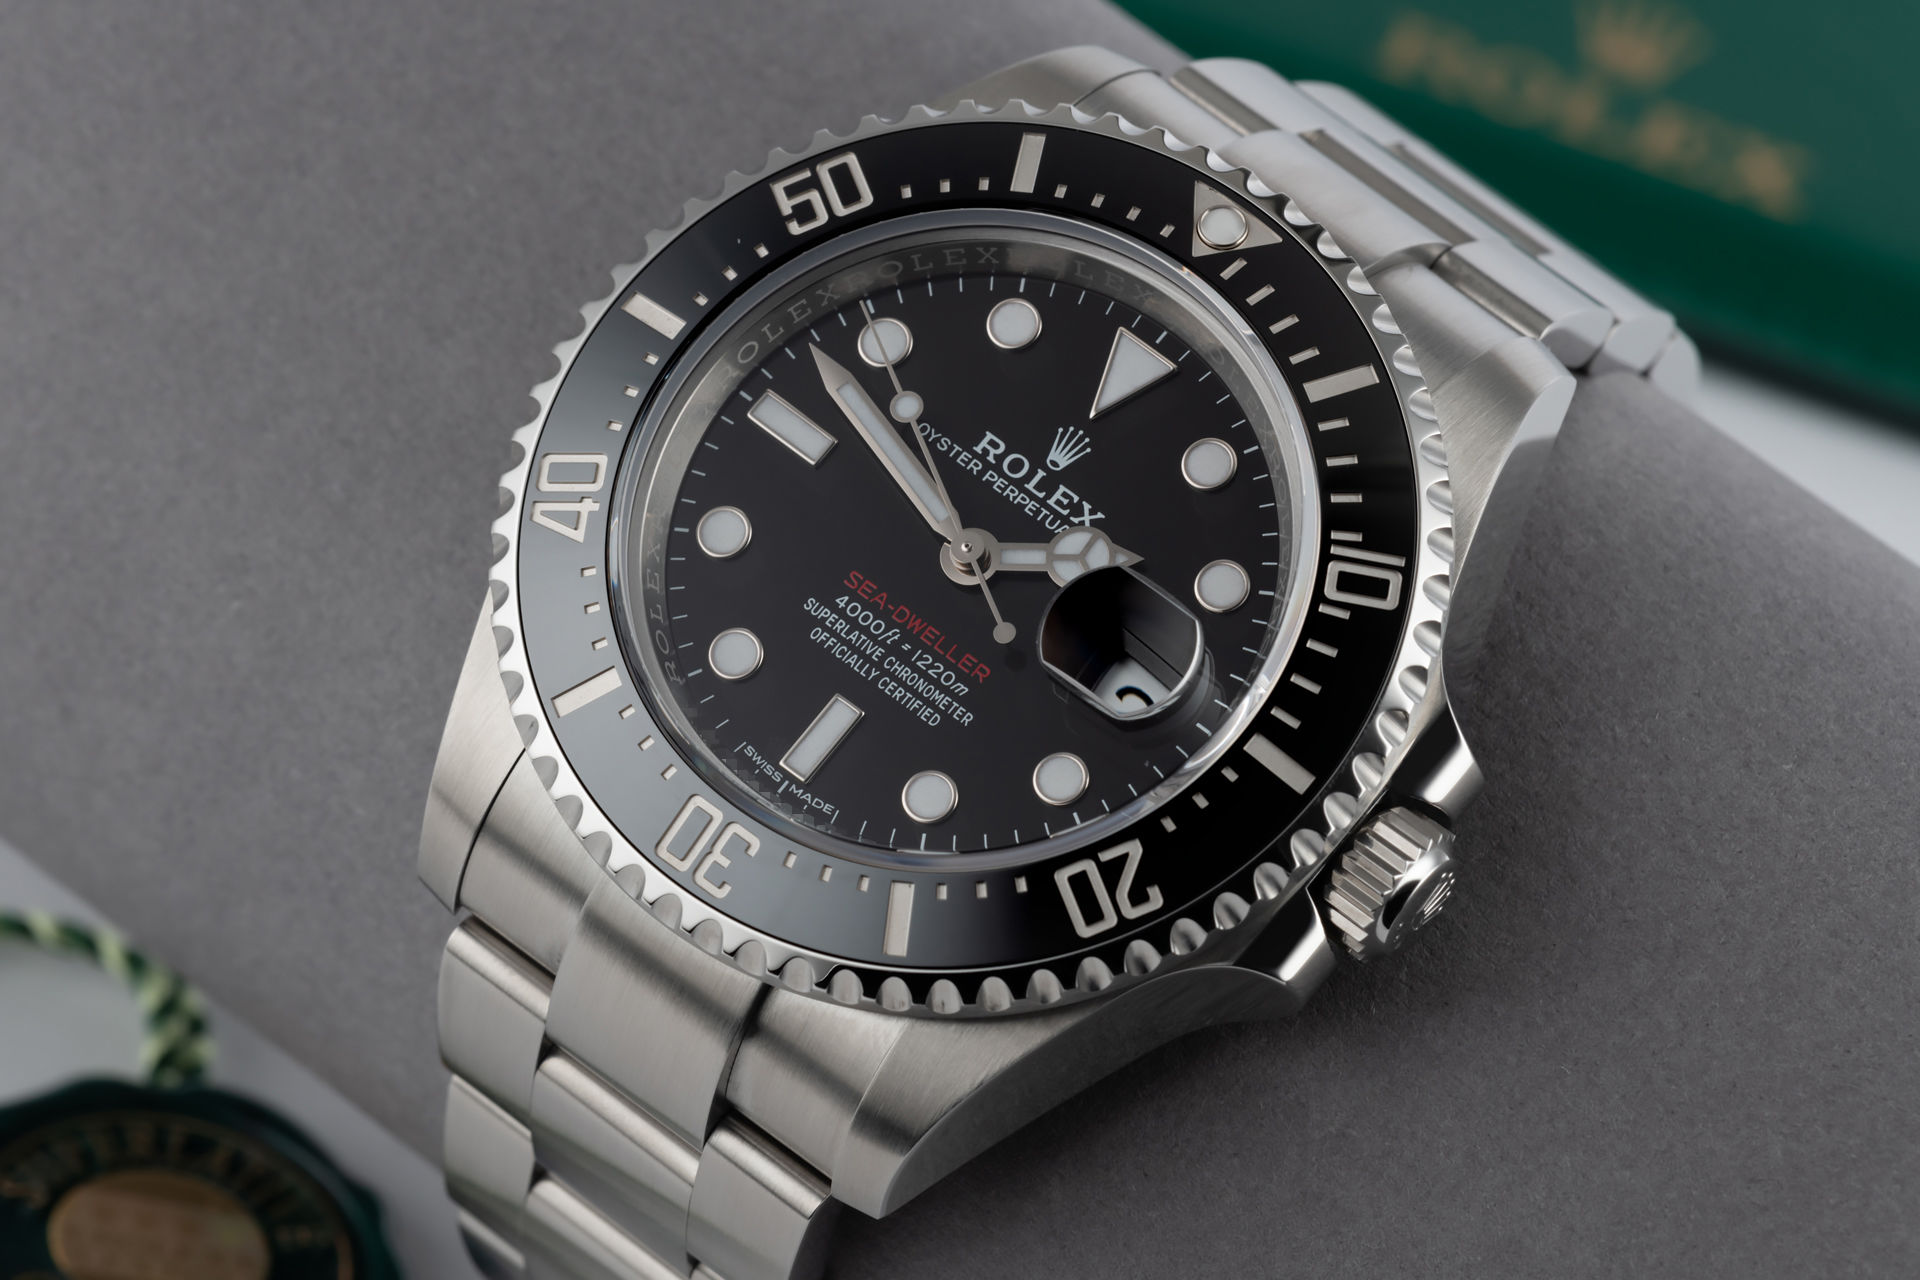 ref 126600 | 'Red-Writing' Under Rolex Warranty | Rolex Sea-Dweller